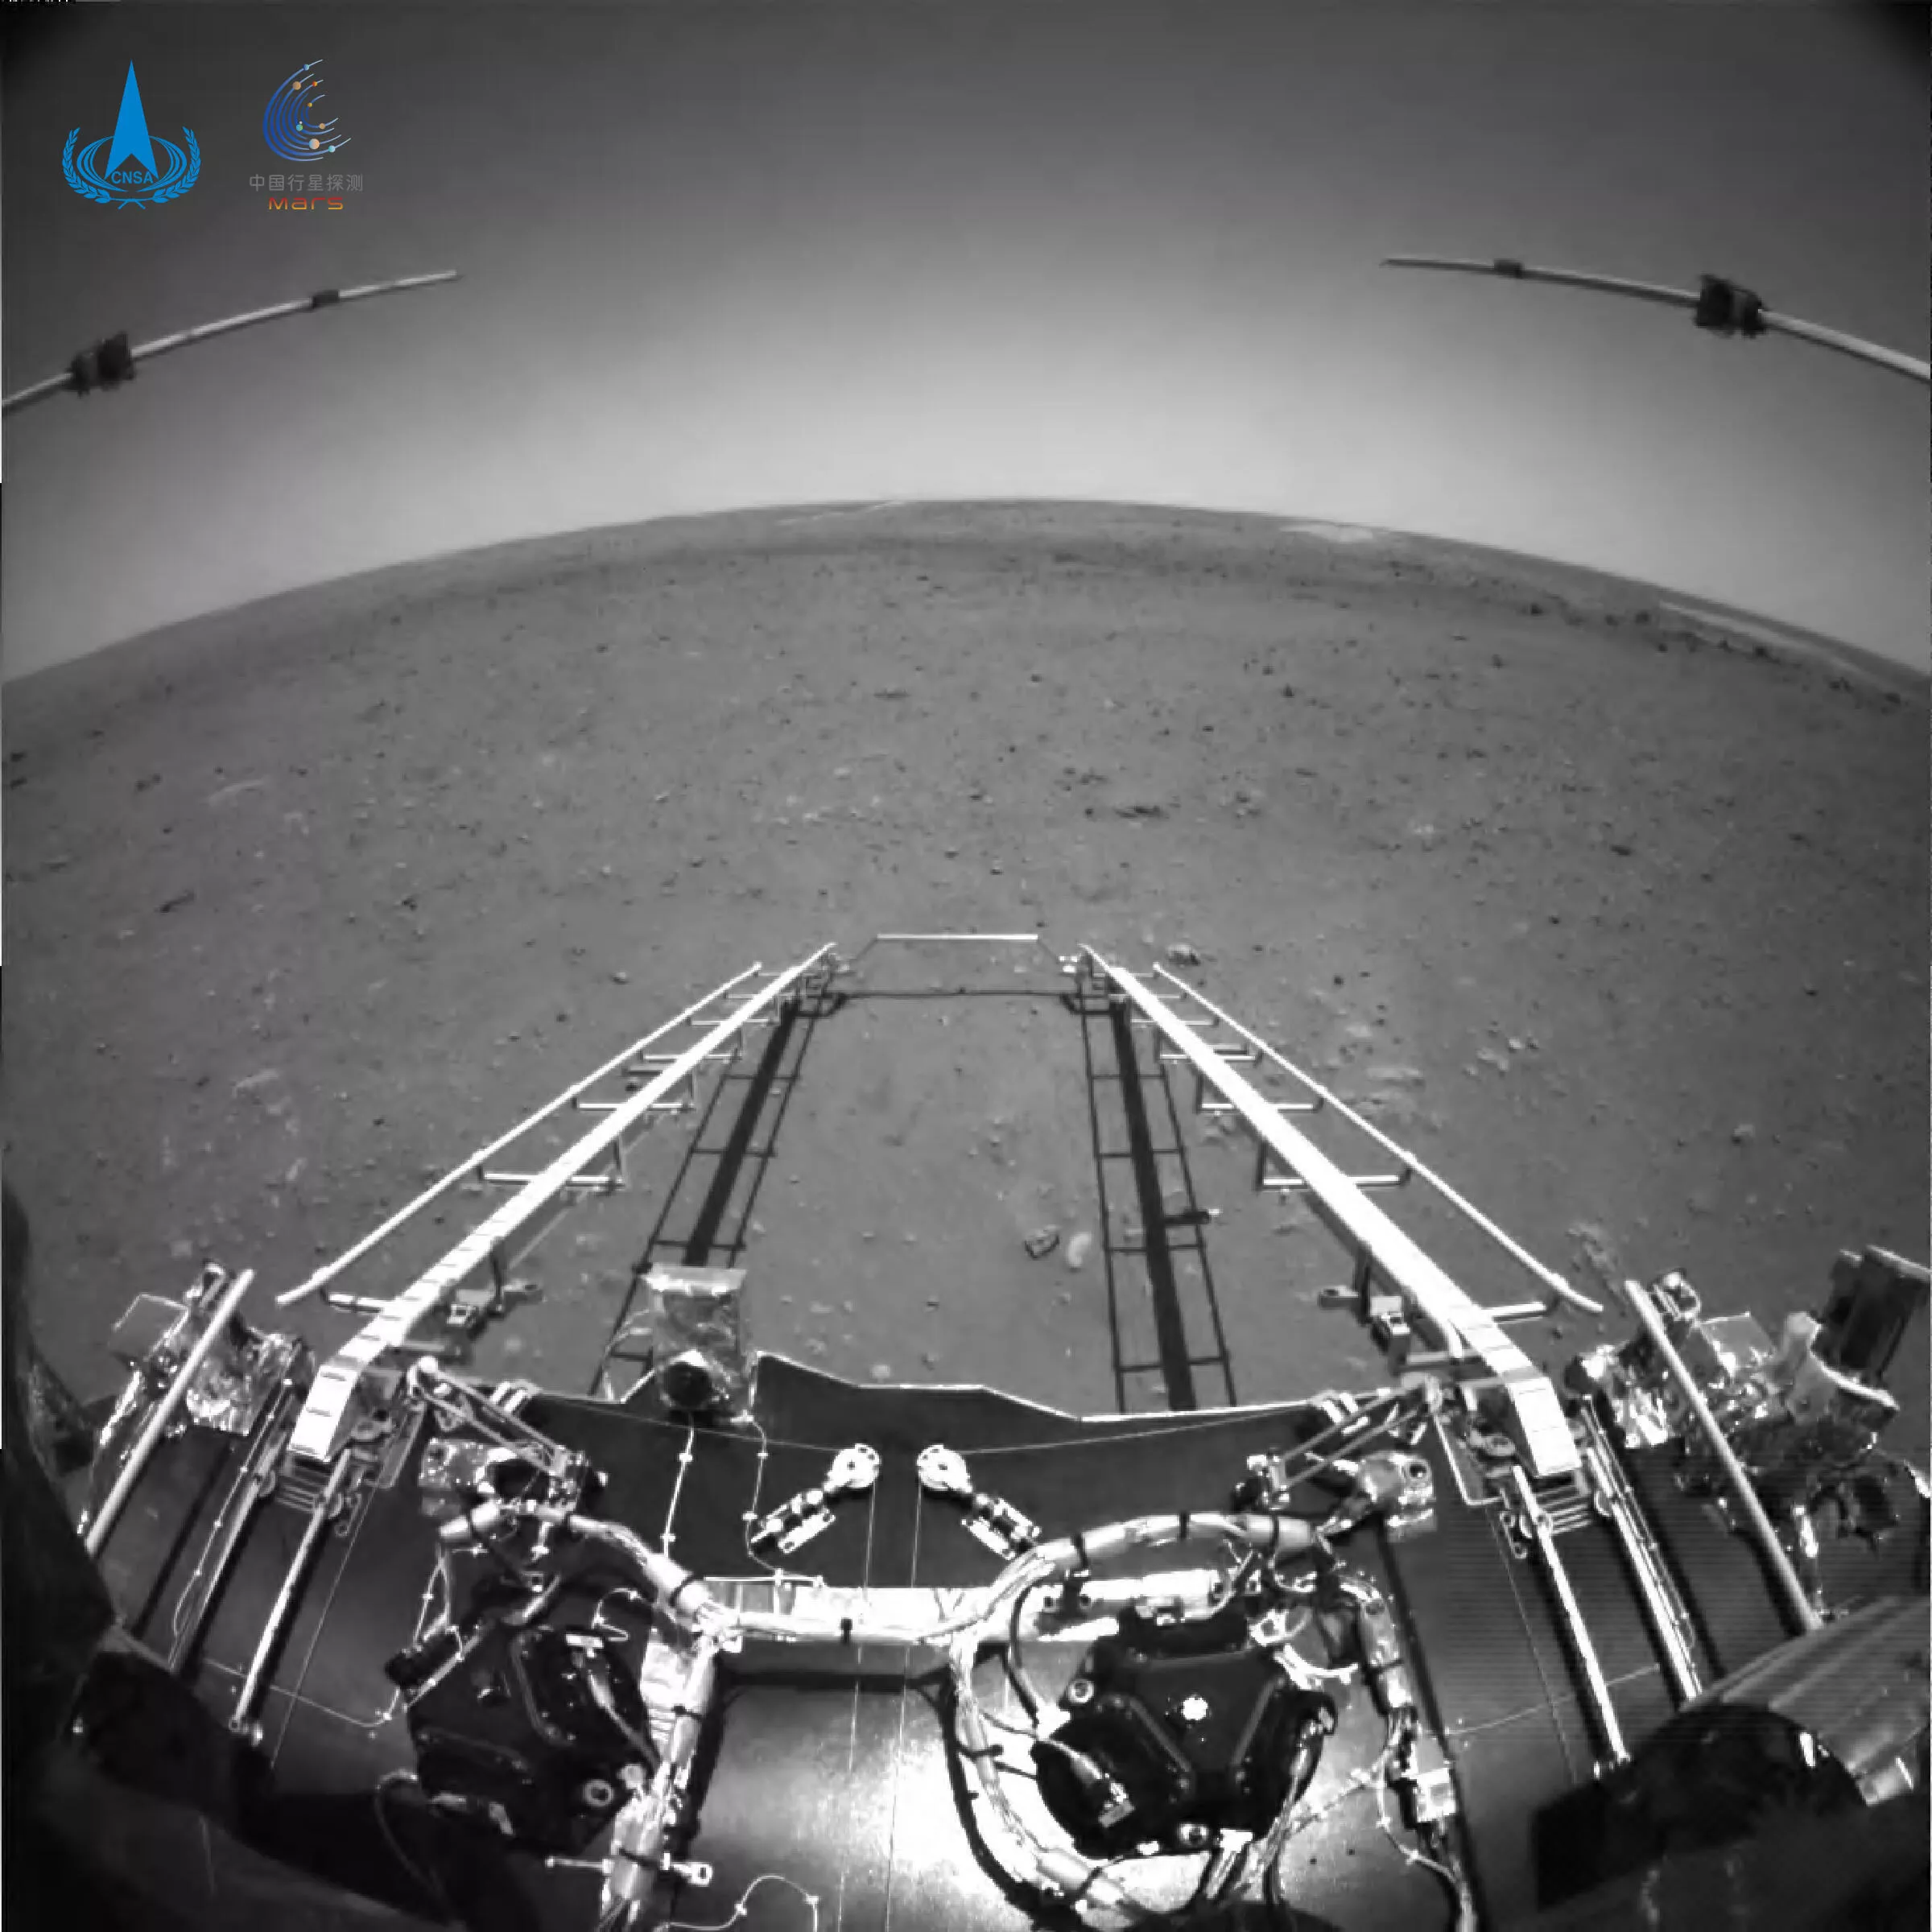 Марсоход «Чжуронг» отправил обратно этот черно-белый снимок, показывающий спускаемые аппарели, ведущие к поверхности.
